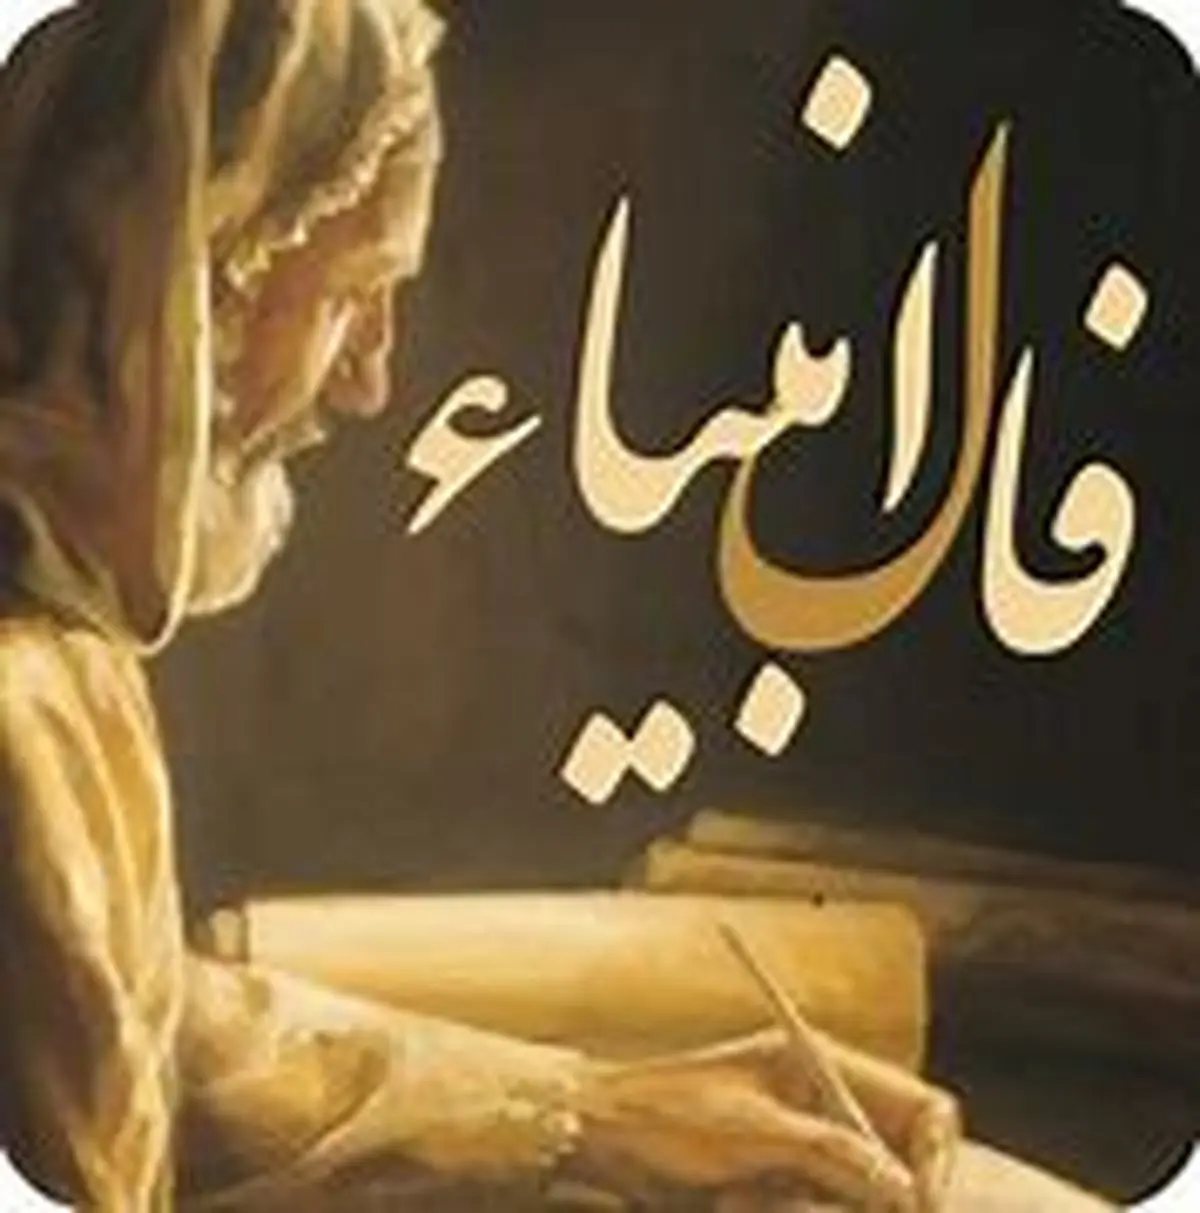 فال انبیا 7 بهمن رو بگیر و روزت رو شروع کن! | اخبرای خوب تو راهه.